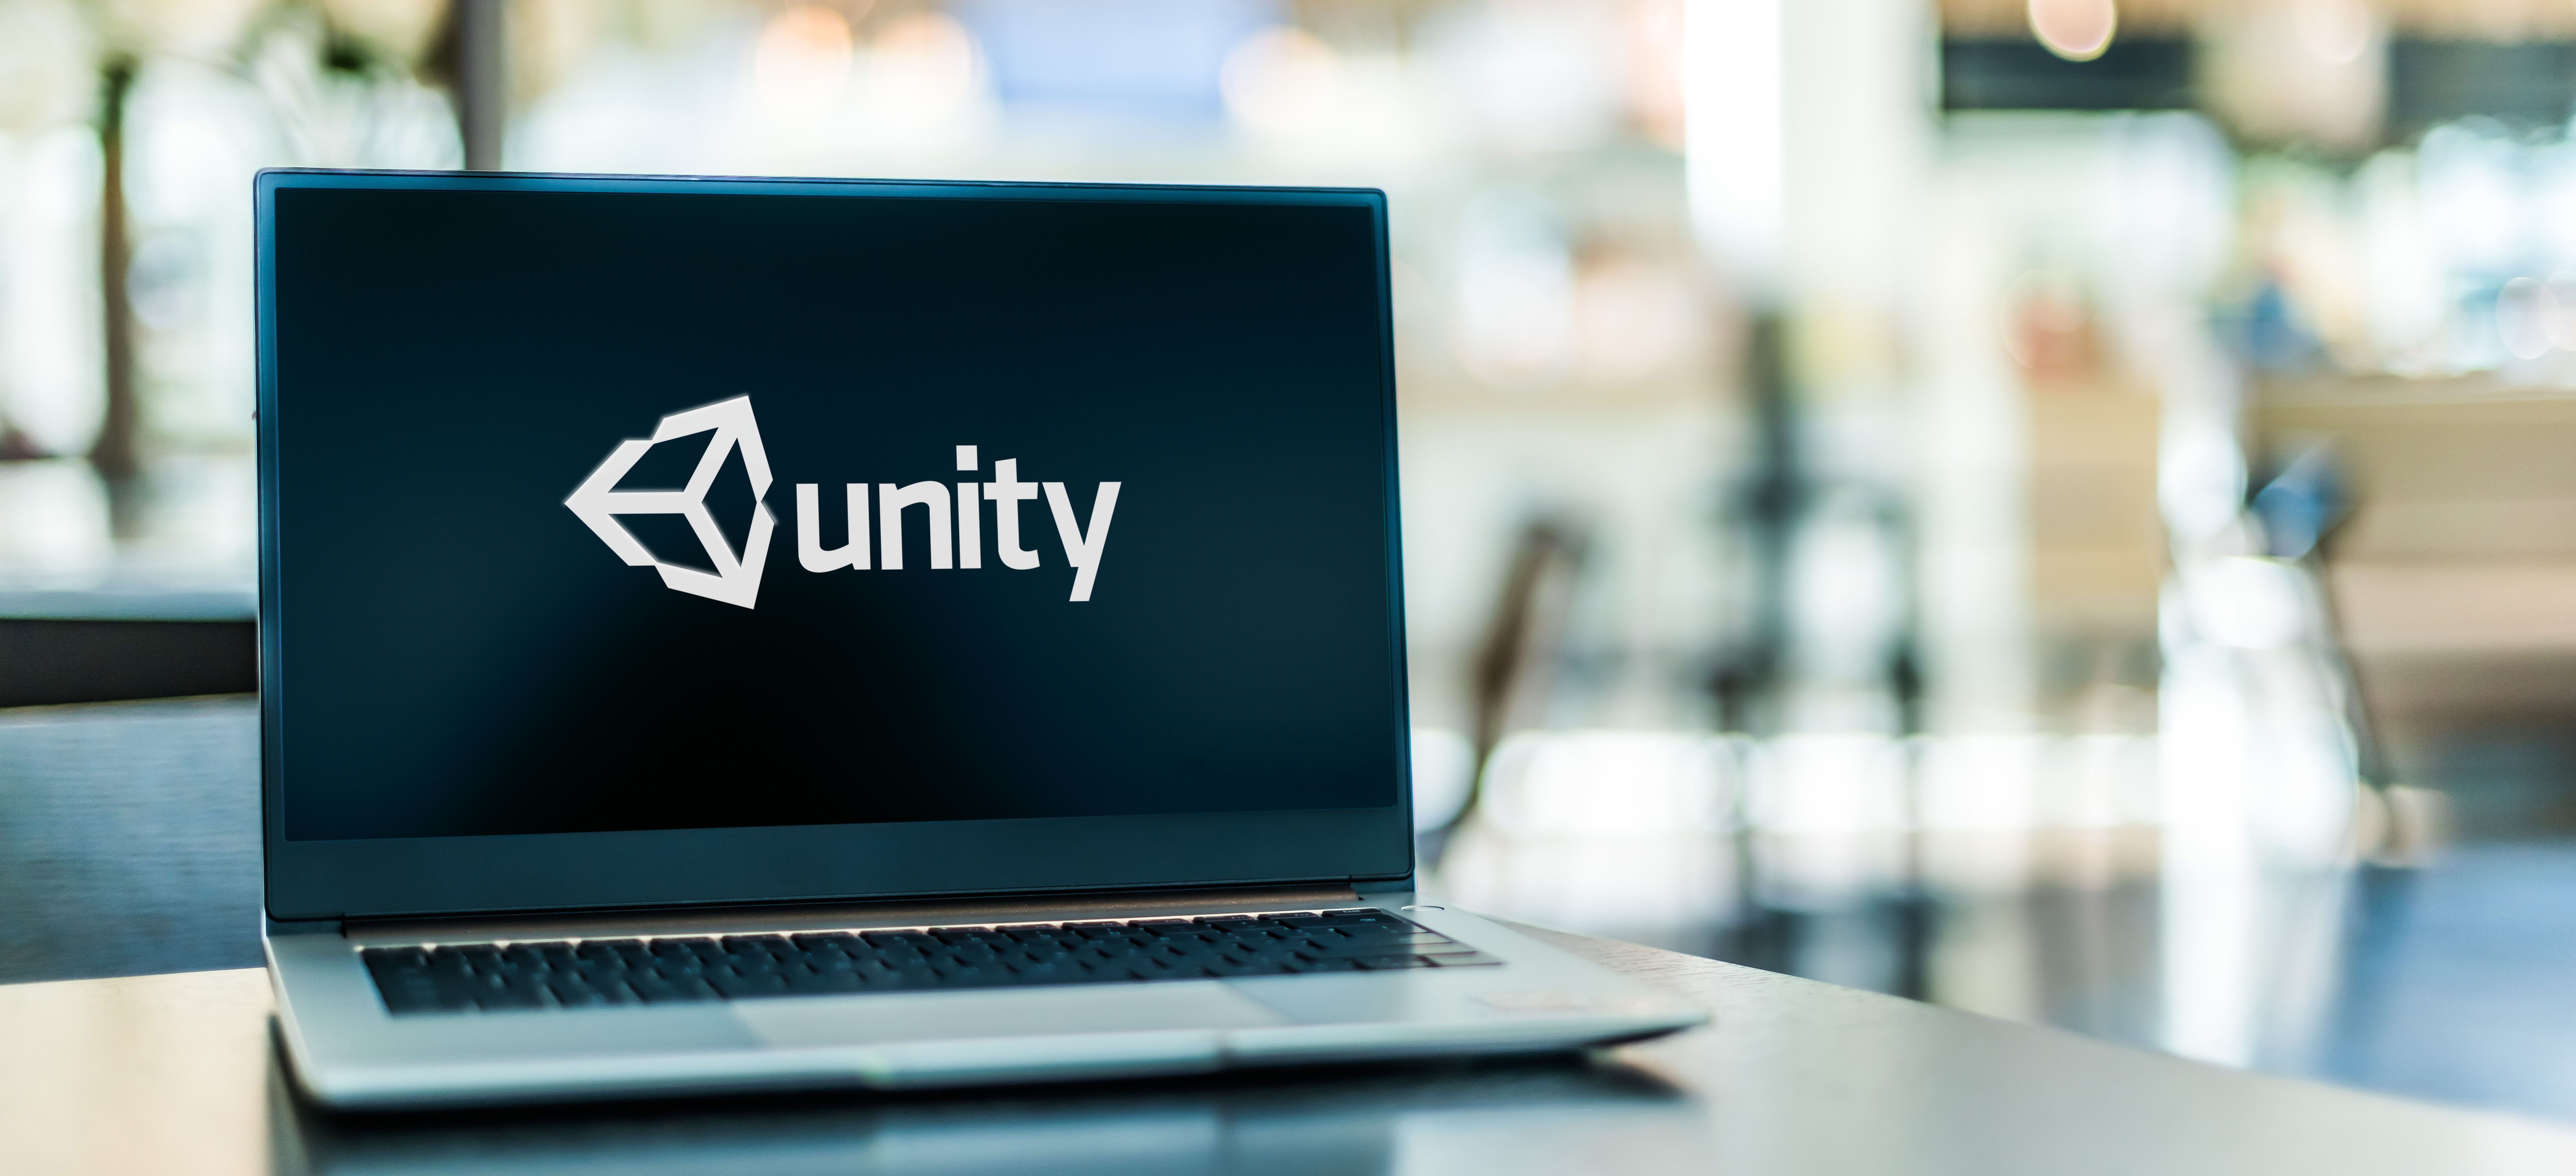 Unity Developer là gì? Mức lương, cơ hội việc làm Unity Developer hiện nay